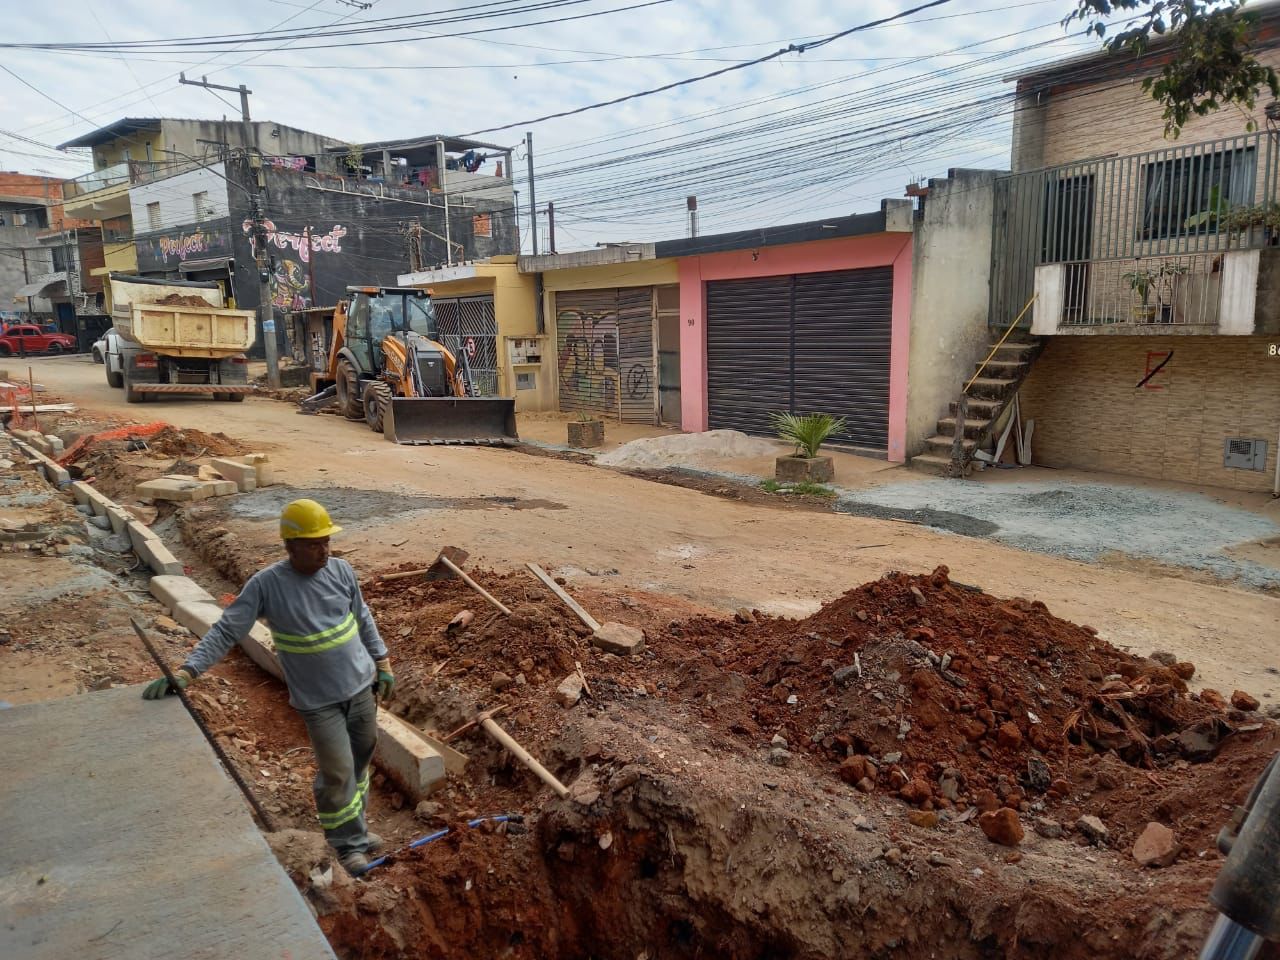 Rua de terra, guias e sarjetas sendo construídas. Na imagem vemos um trabalhador passando, ele usa uniforme cinza com detalhes verdes e um capacete de segurança da cor amarela.